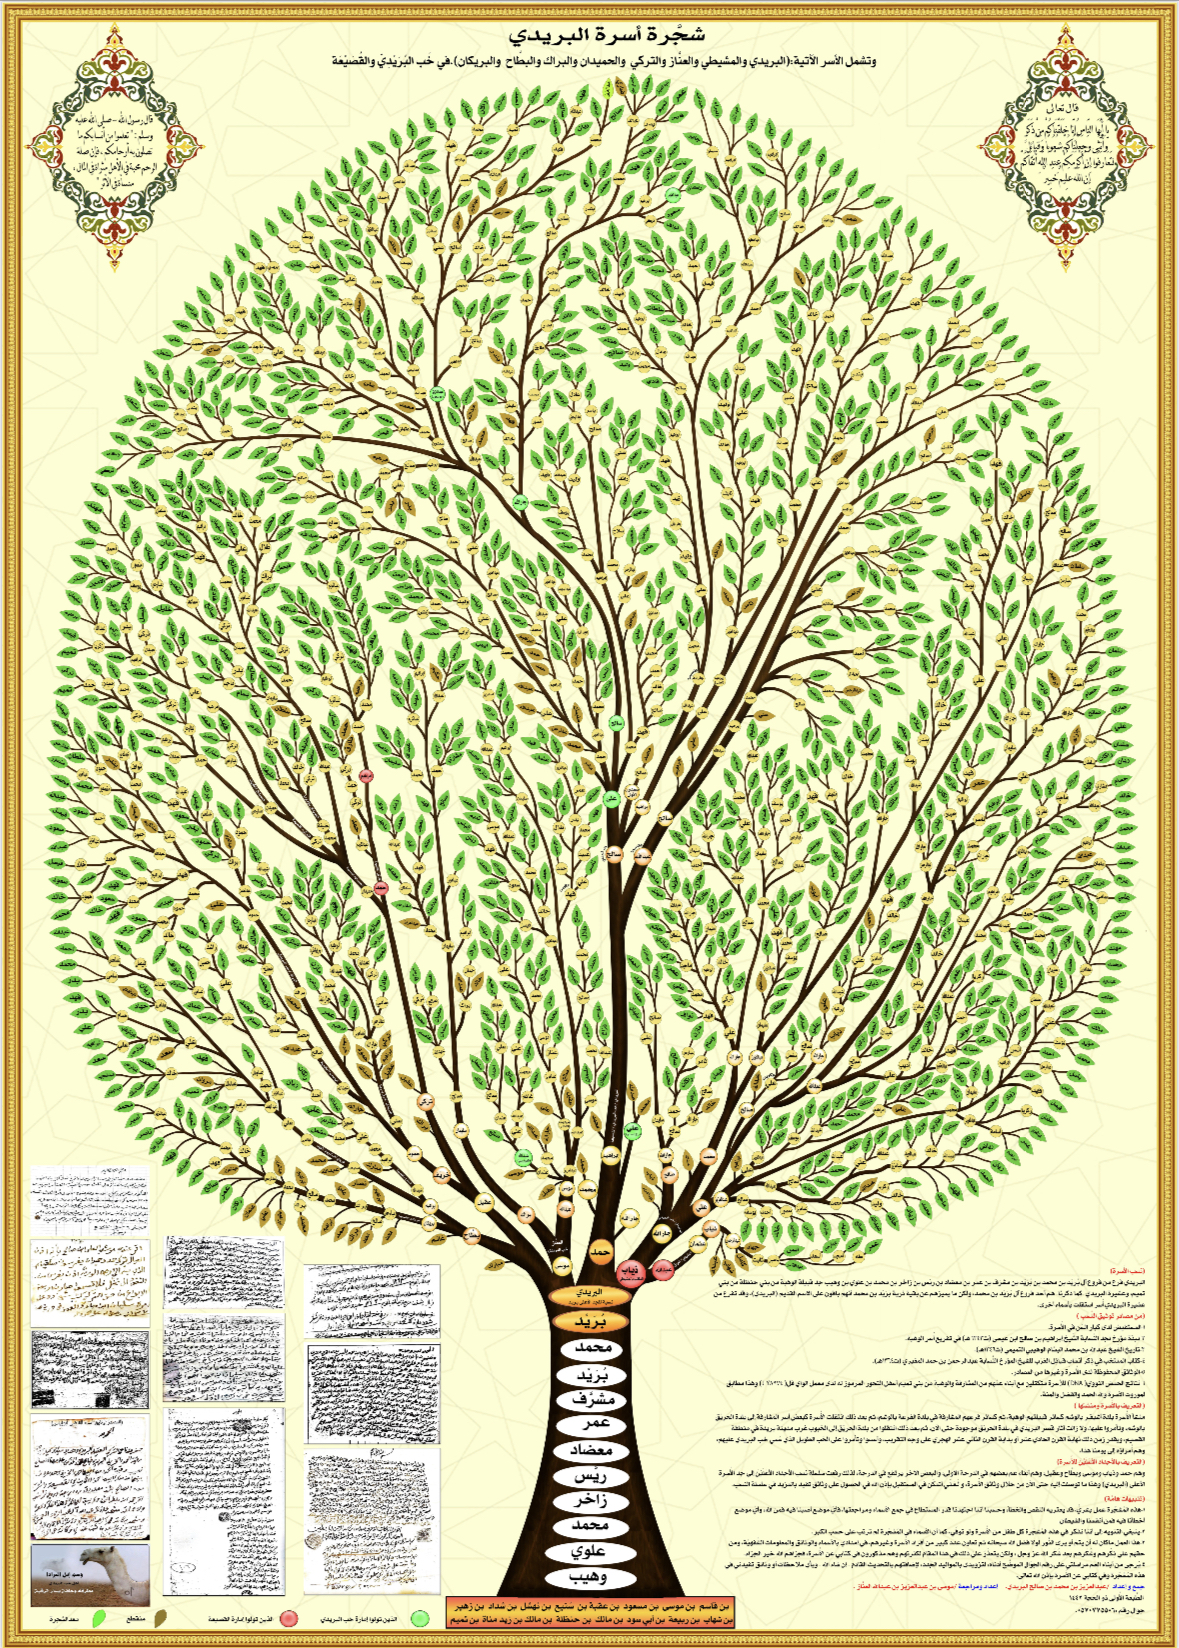 مشجرة أسرة البريدي